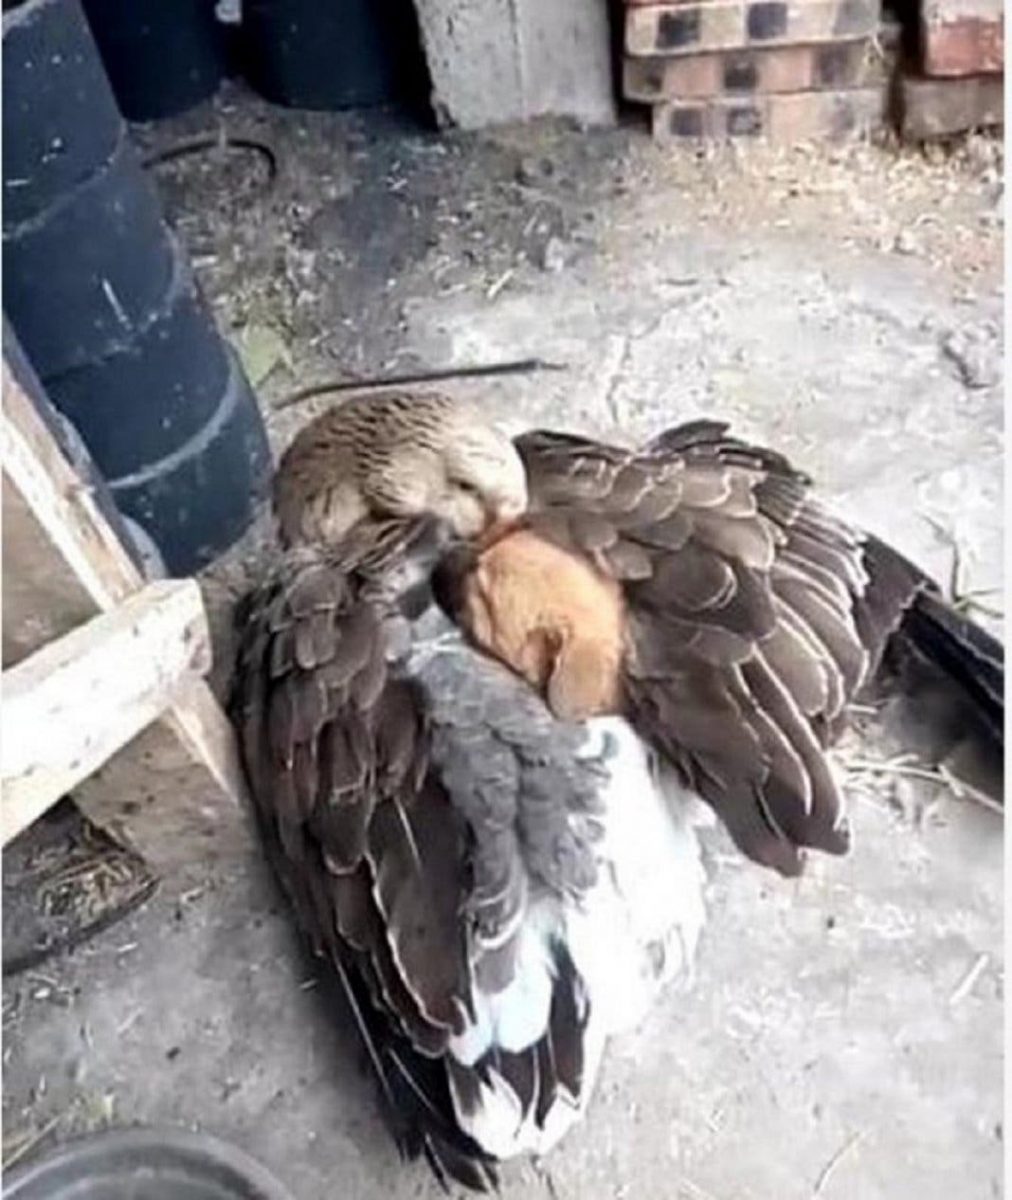 duck protects puppy 1 1068x1266 1 scaled - Pato acolhe em suas asas e aquece filhote de cão abandonado no frio